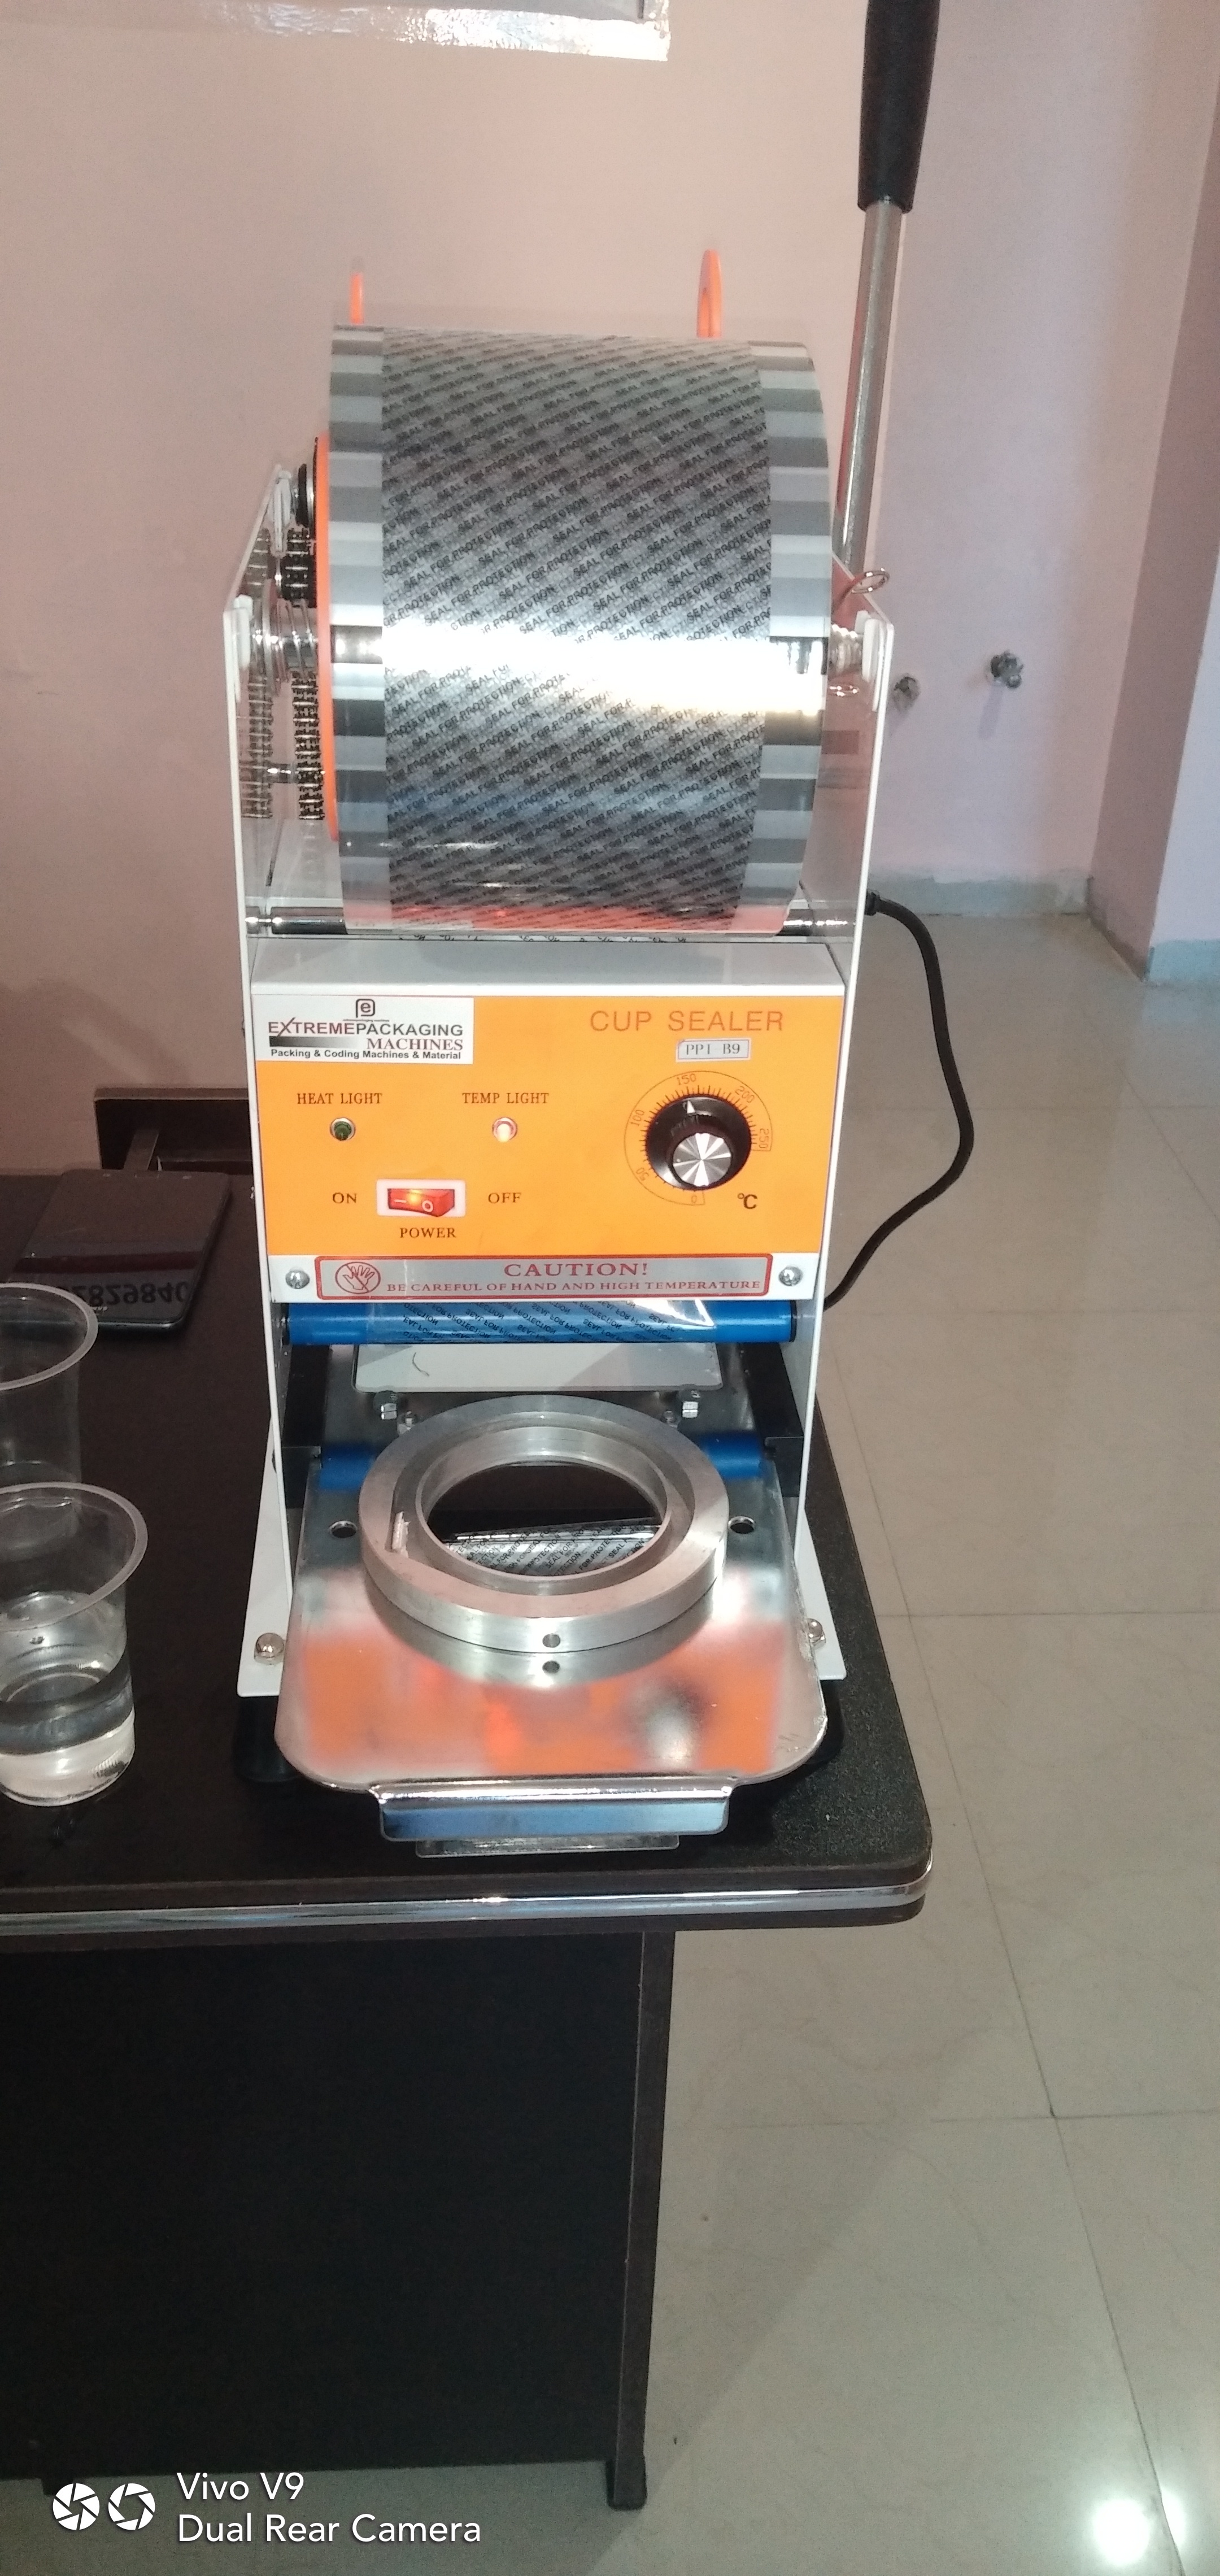 Cup sealer Machine ( Semi Automatic )